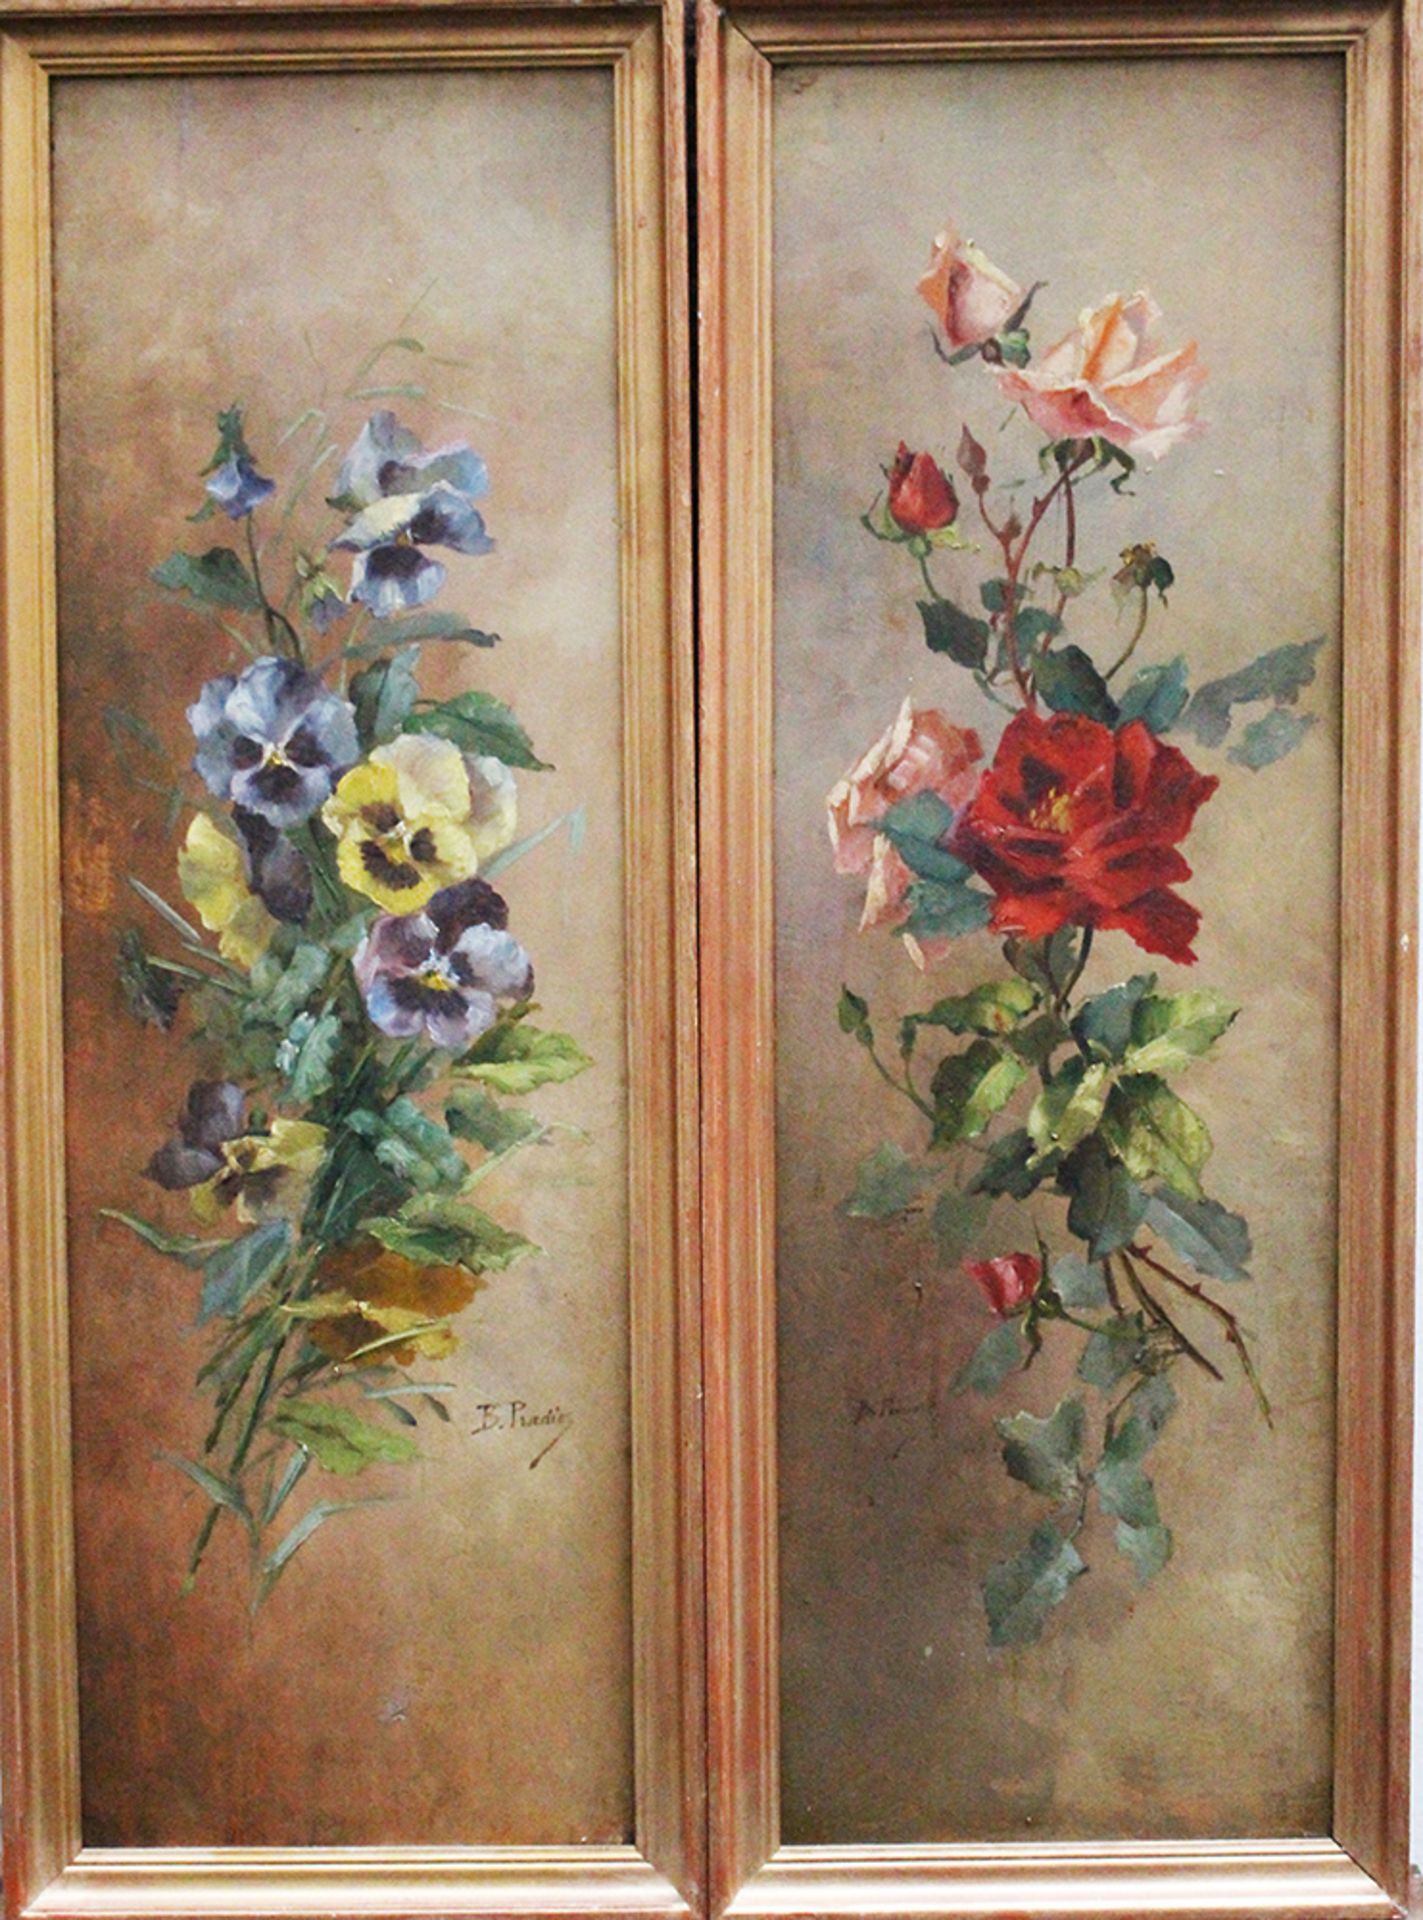 B.Pradier 19th Century , Pair of flower still life, signed , oil on wood , framed. 74x23 cm - Image 2 of 4